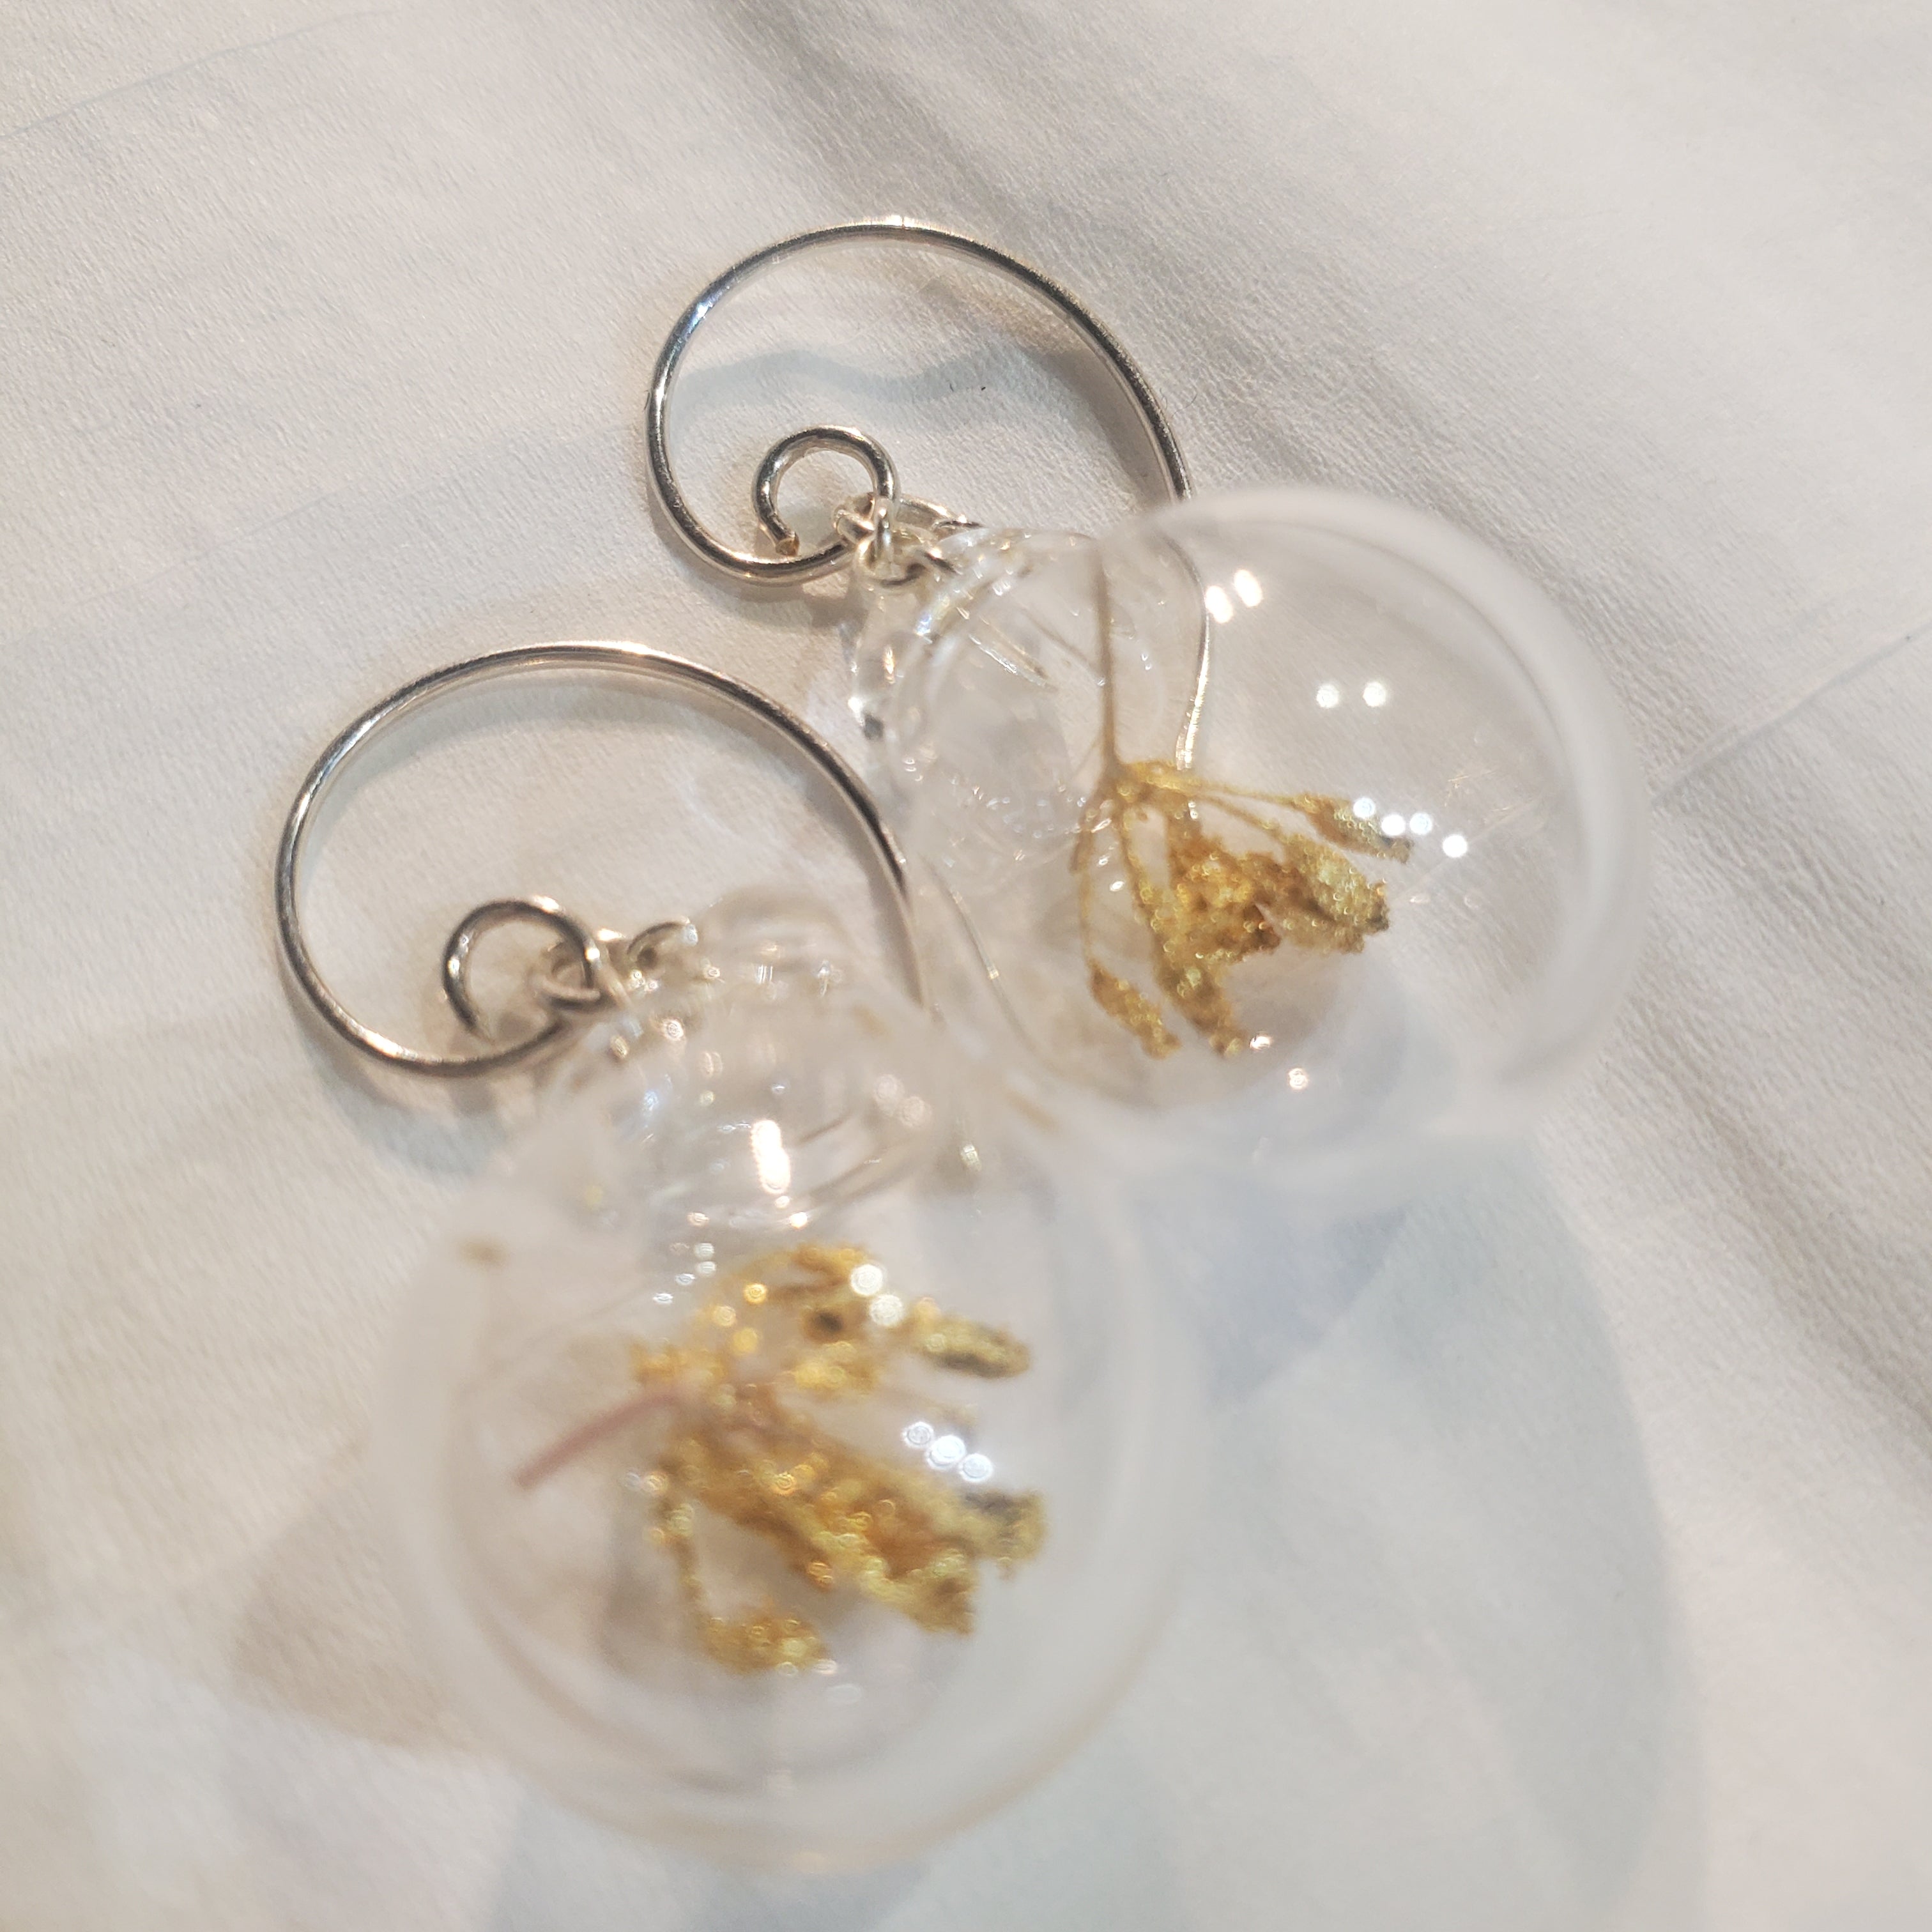 Gilded dill 22 k earrings